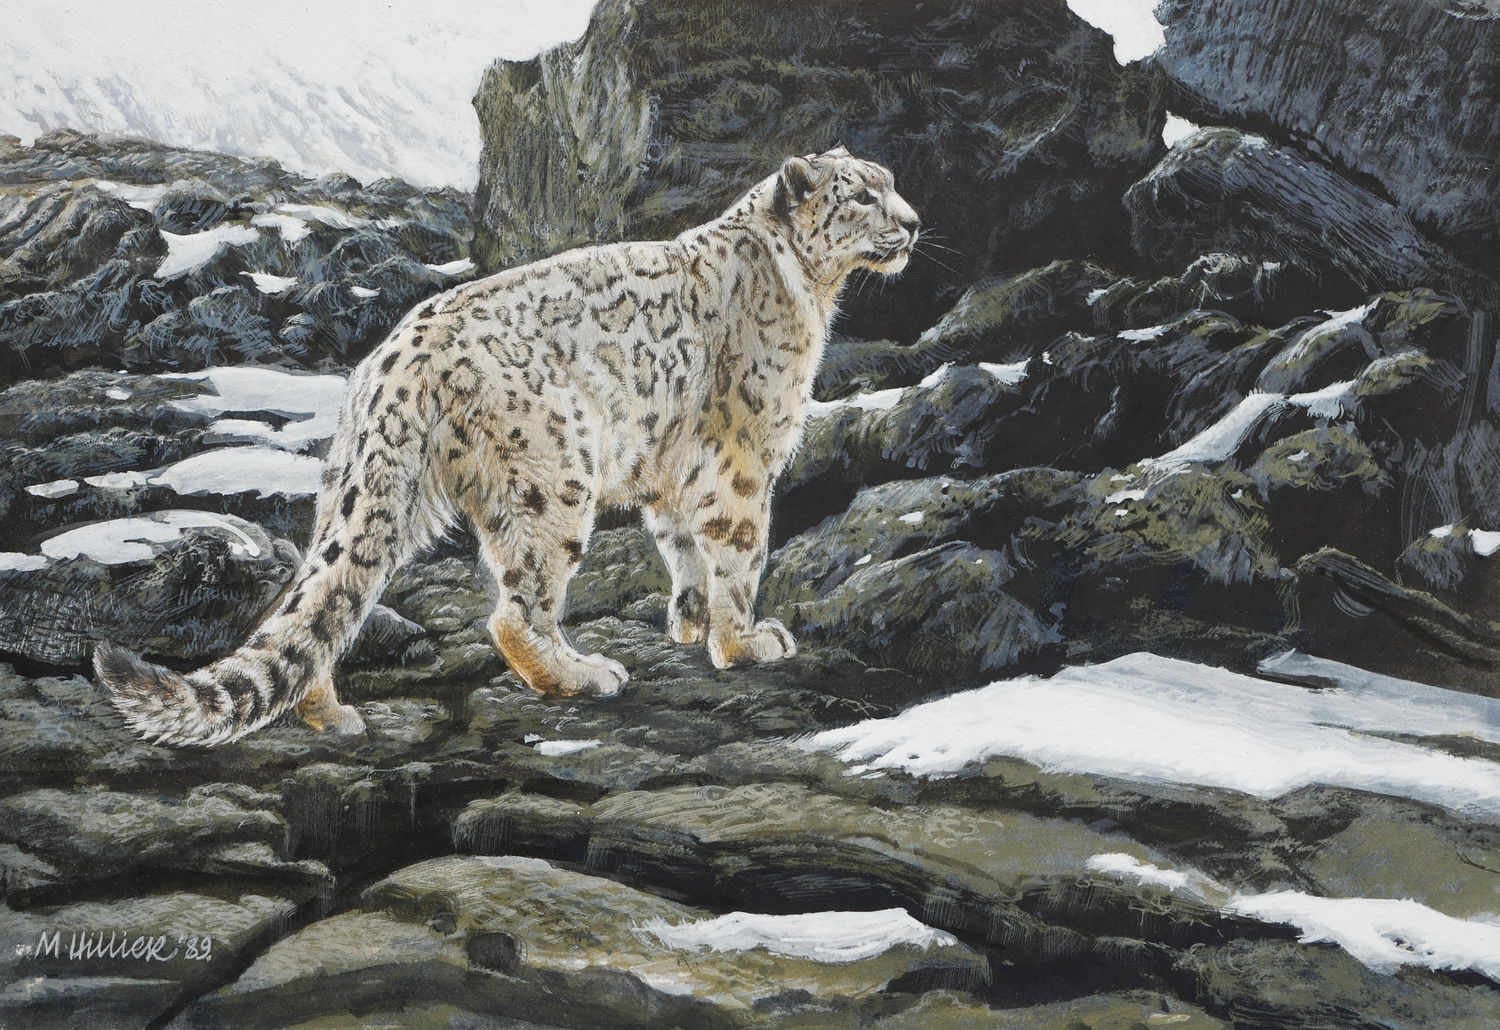 Matthew Hillier – Snow Leopard on Rocks